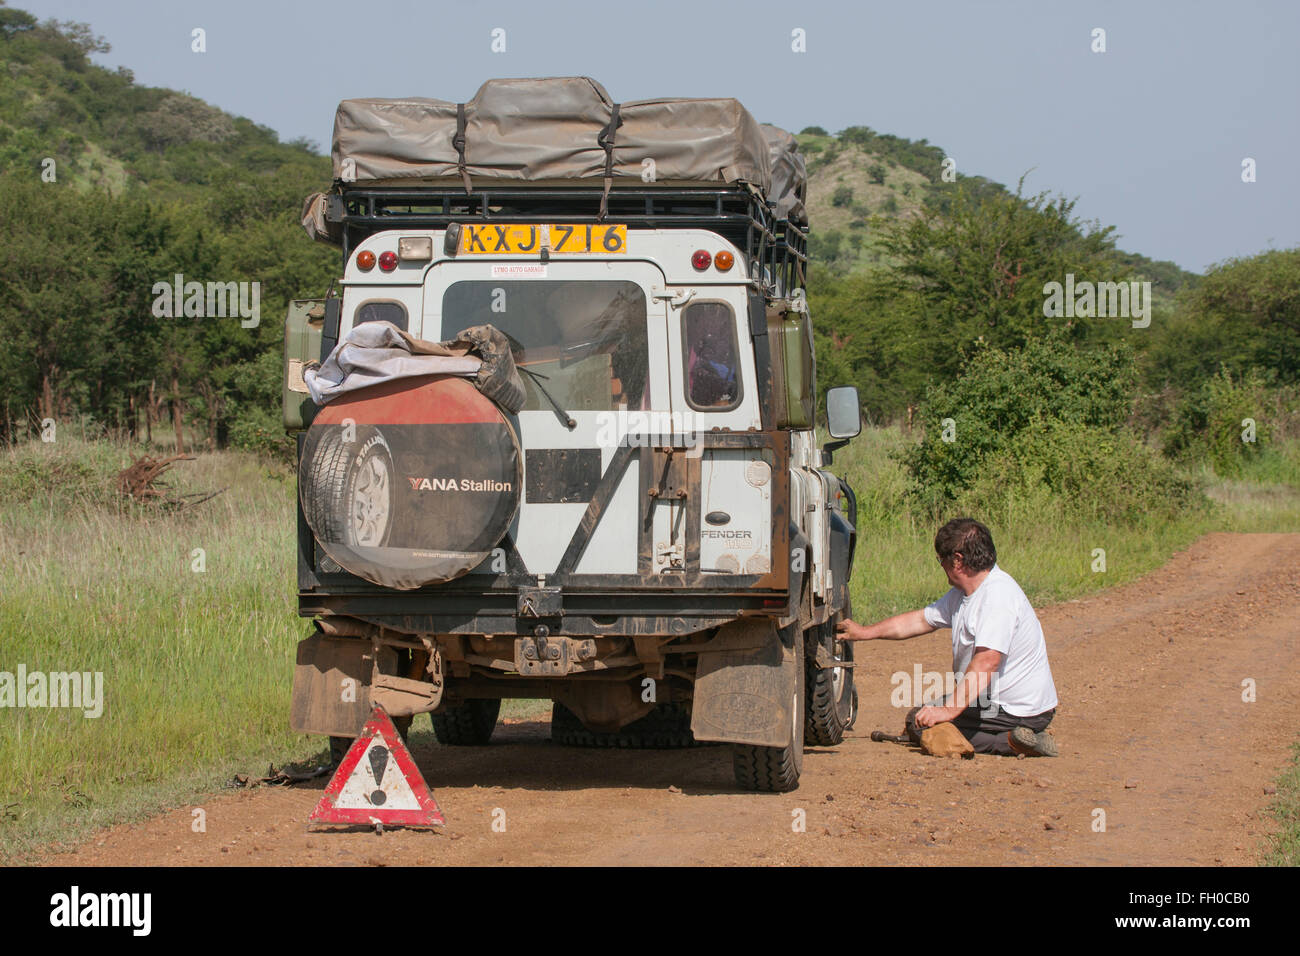 Der alte Land Rover Defender mit langem Radstand im Serengeti-Nationalpark Tansania. Aufgeschlüsselt Stockfoto